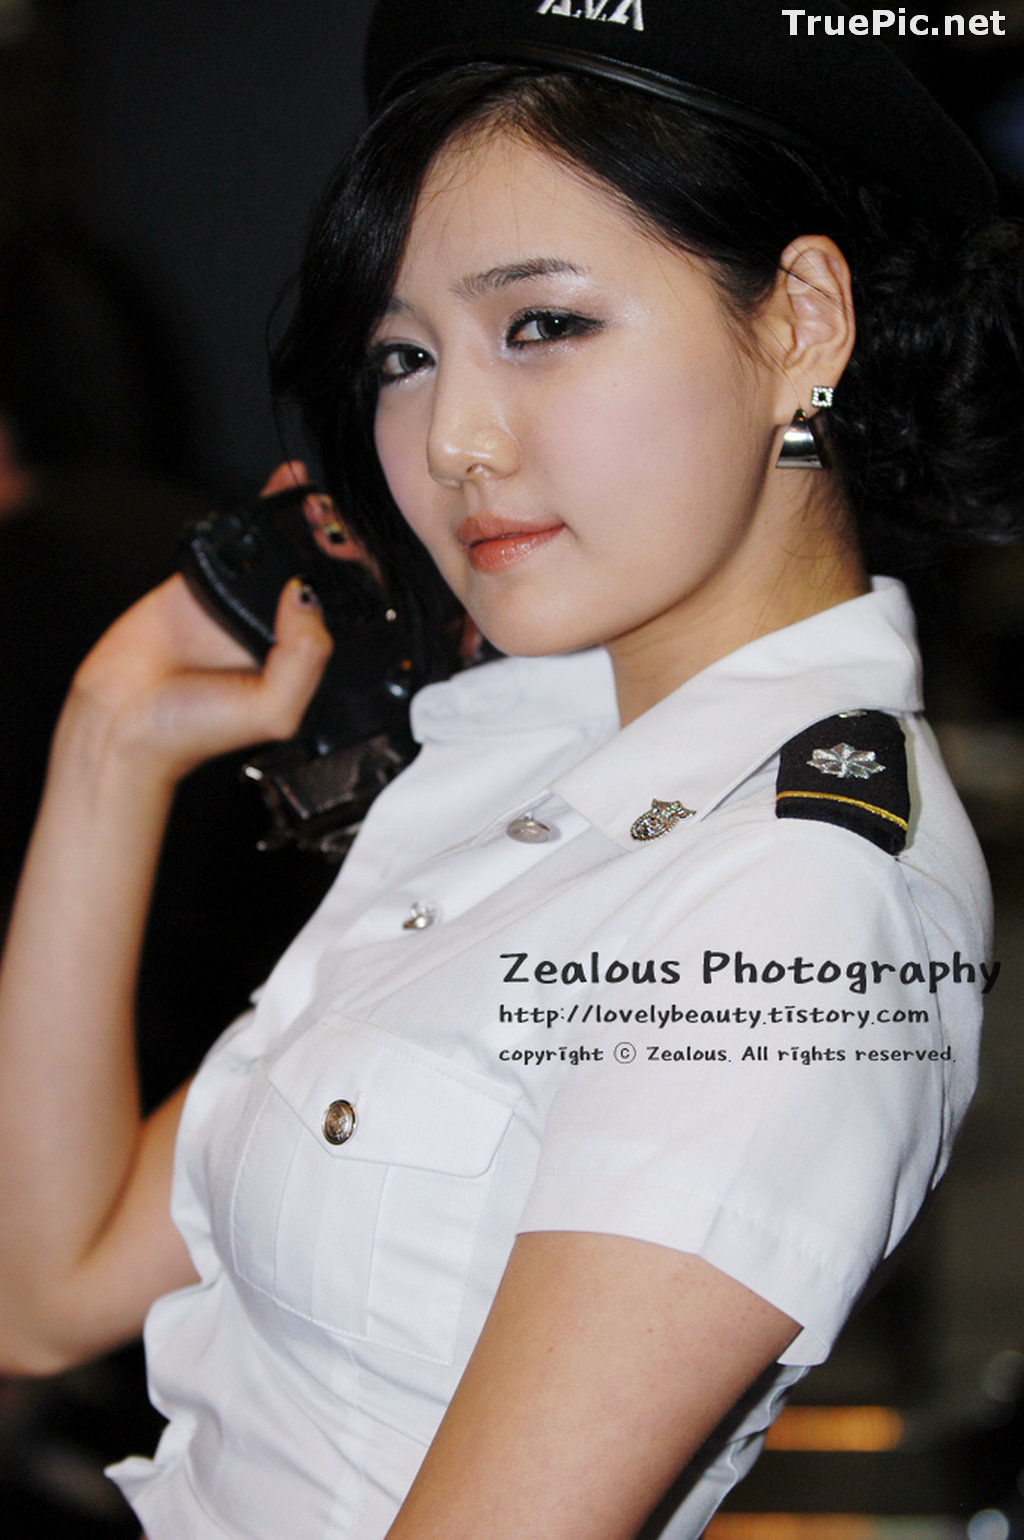 Image Best Beautiful Images Of Korean Racing Queen Han Ga Eun #2 - TruePic.net - Picture-68